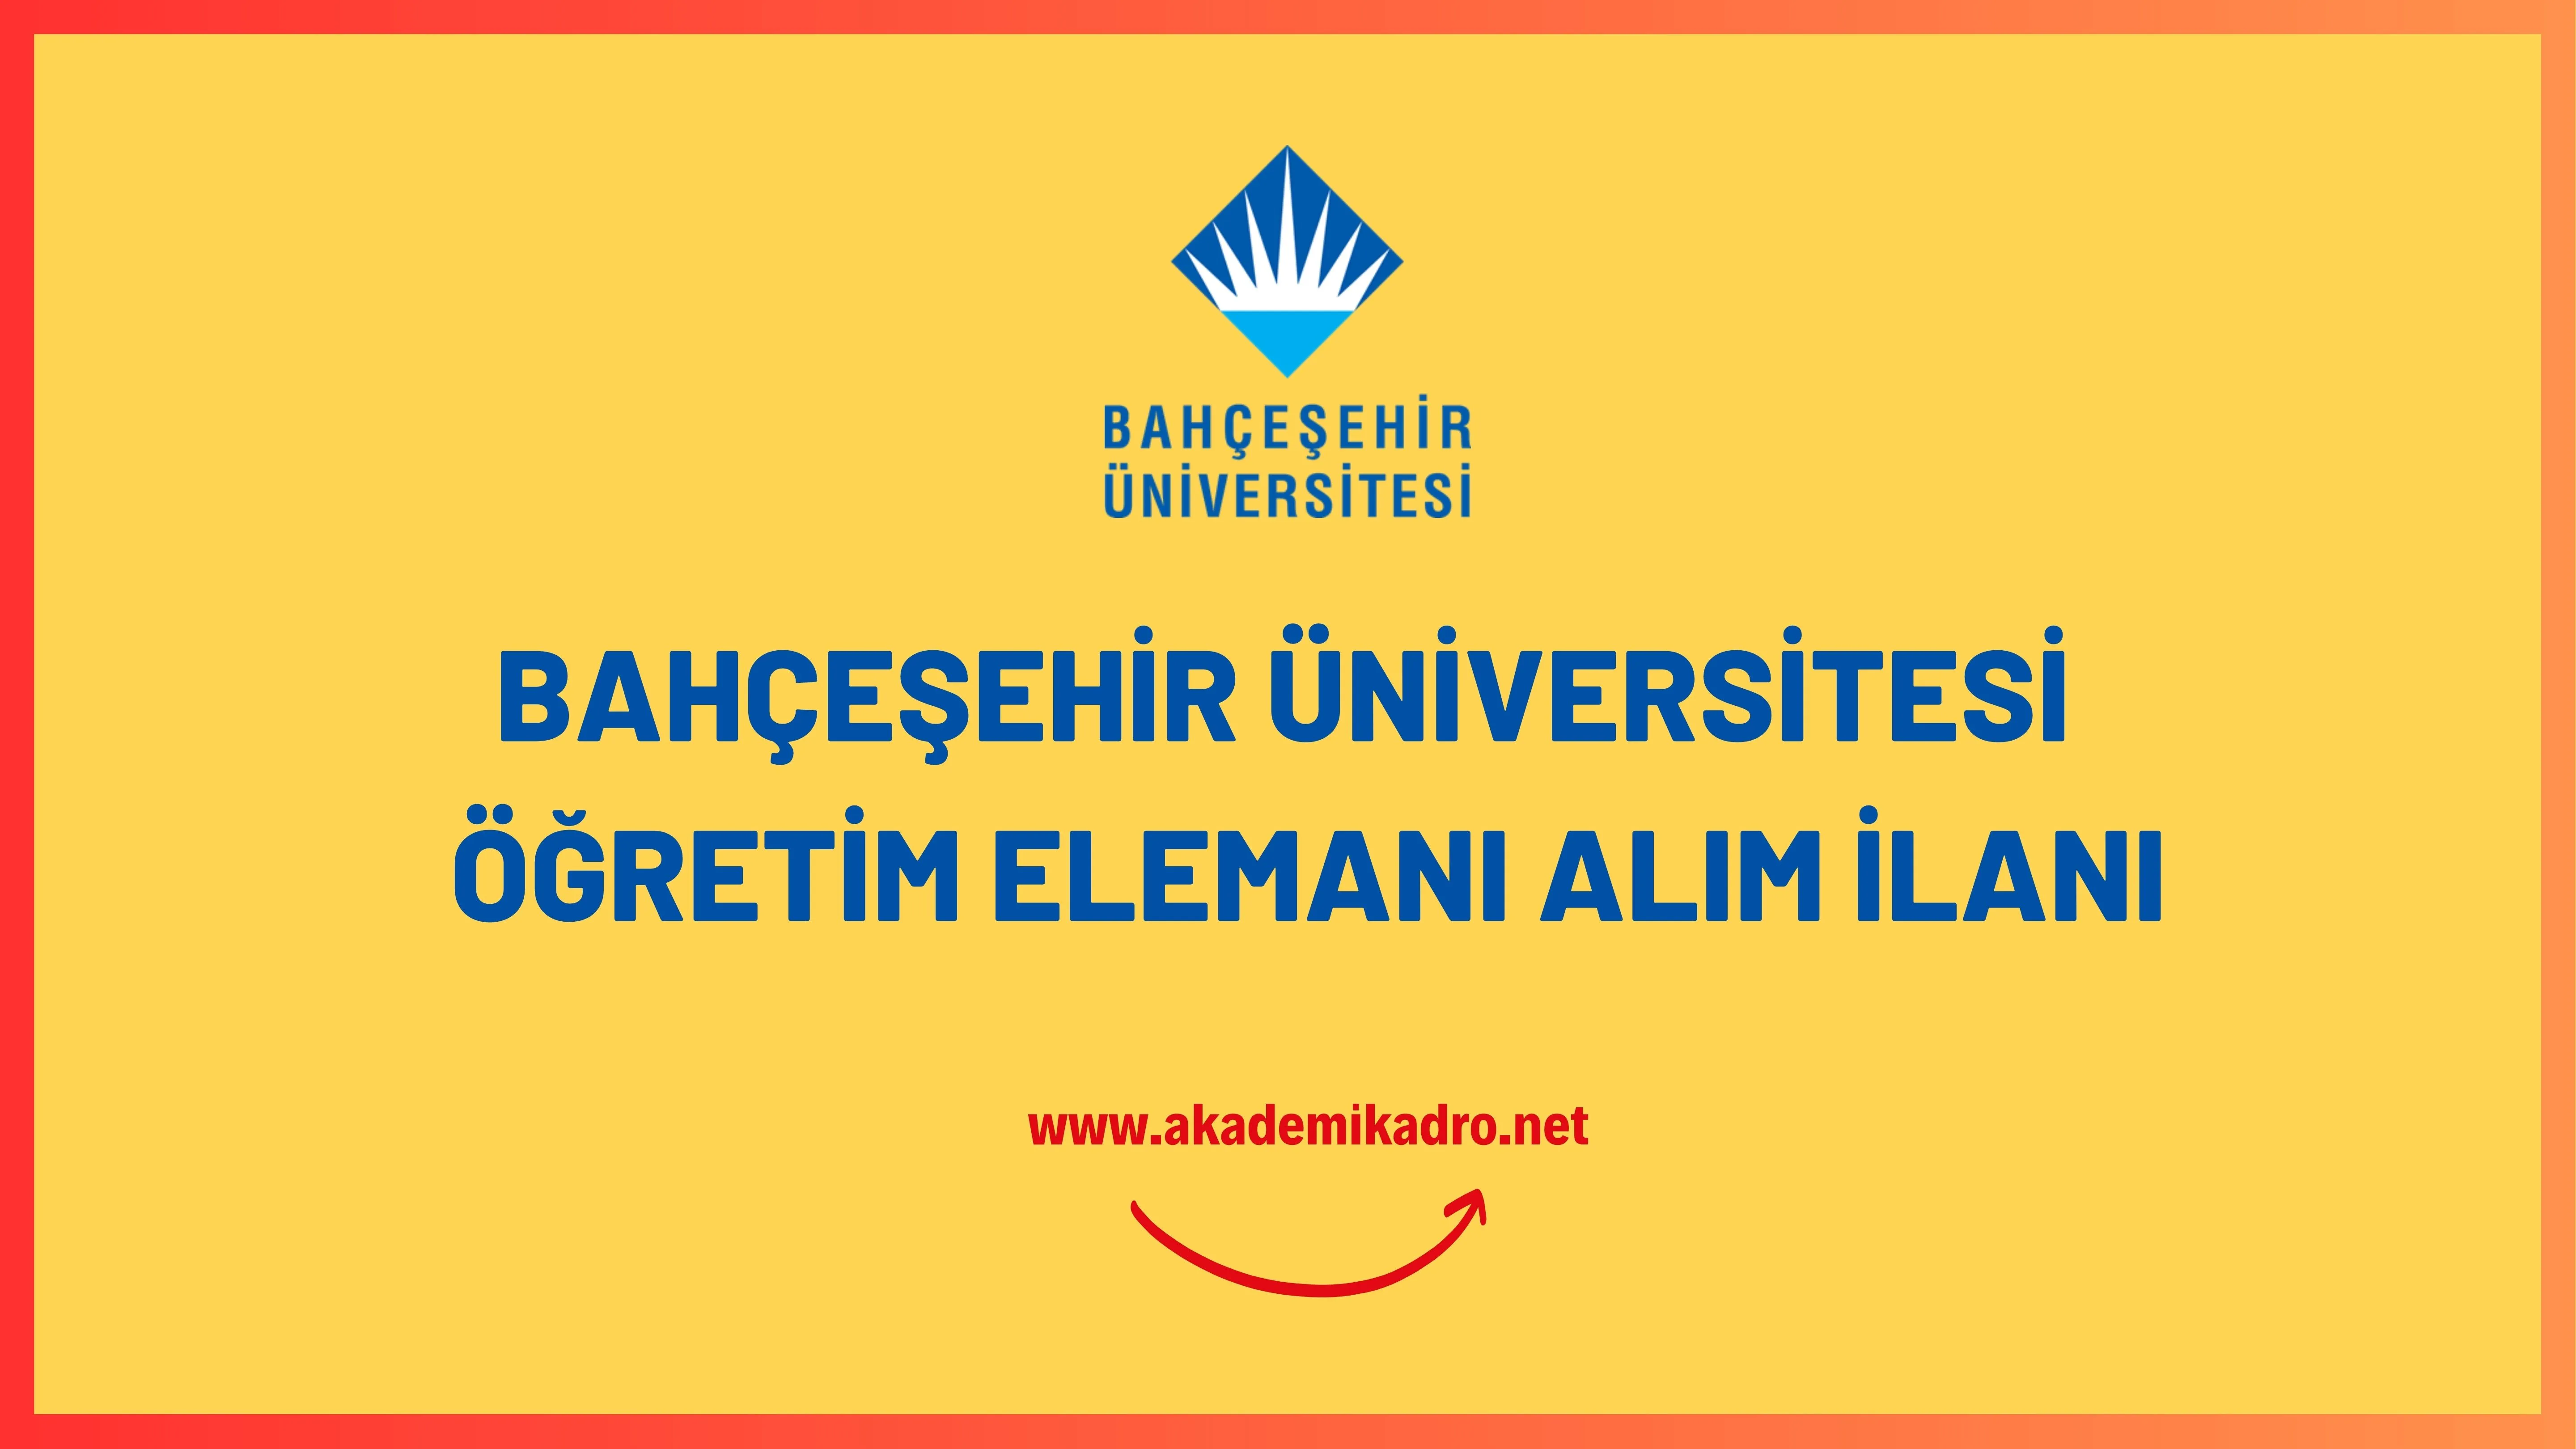 Bahçeşehir Üniversitesi öğretim görevlisi ve öğretim üyesi olmak üzere 49 öğretim elemanı alacak.